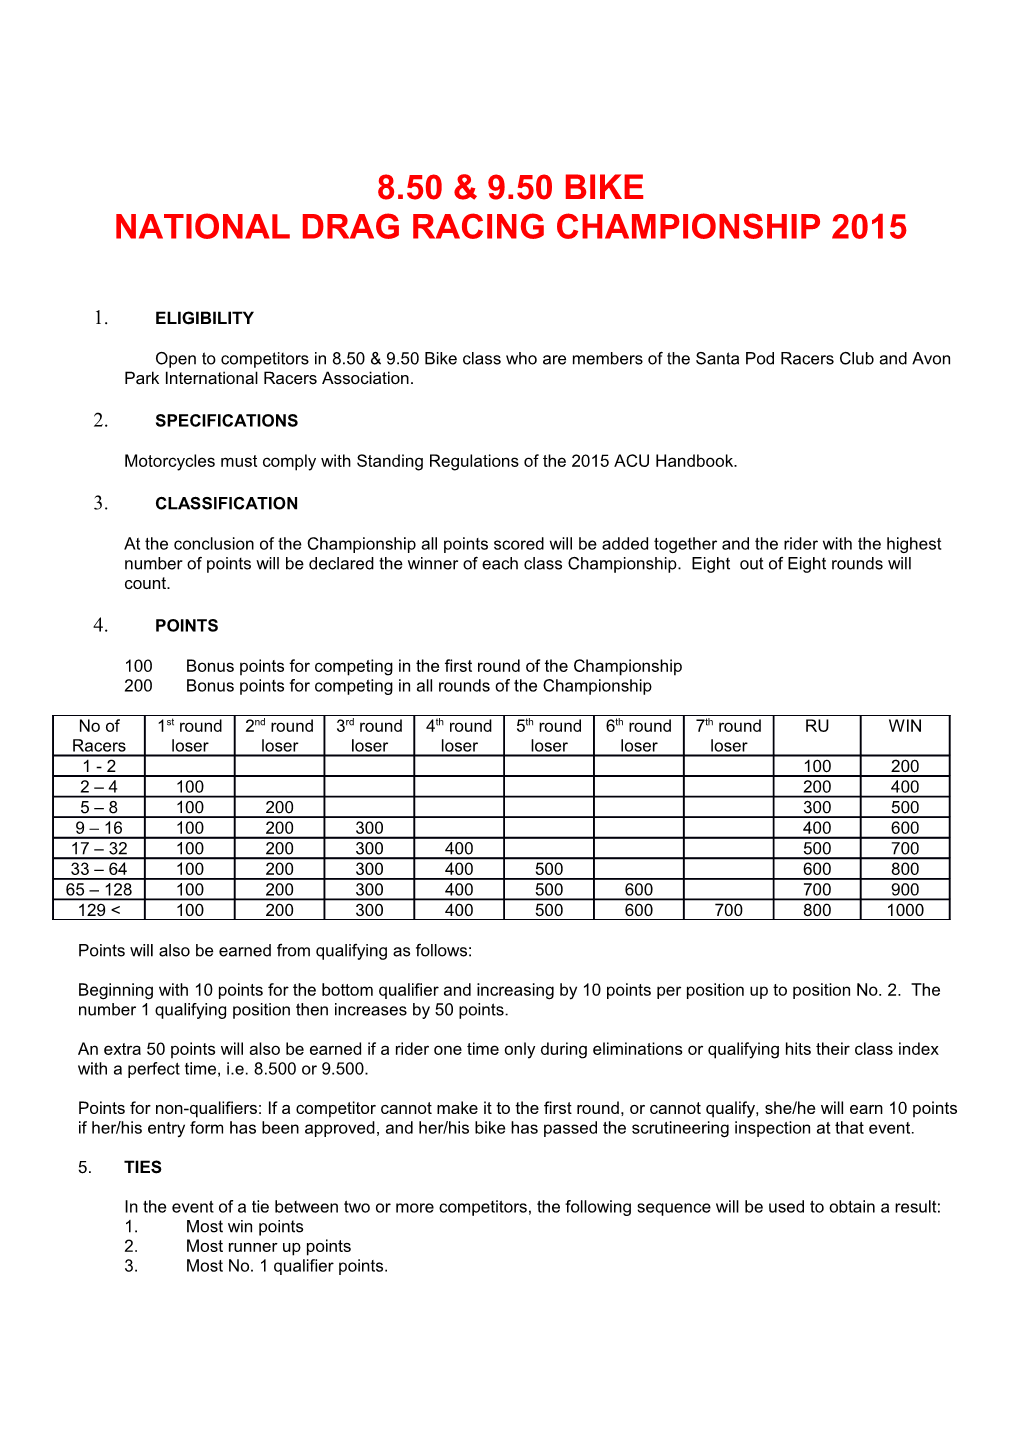 National Drag Racing Championship 2015